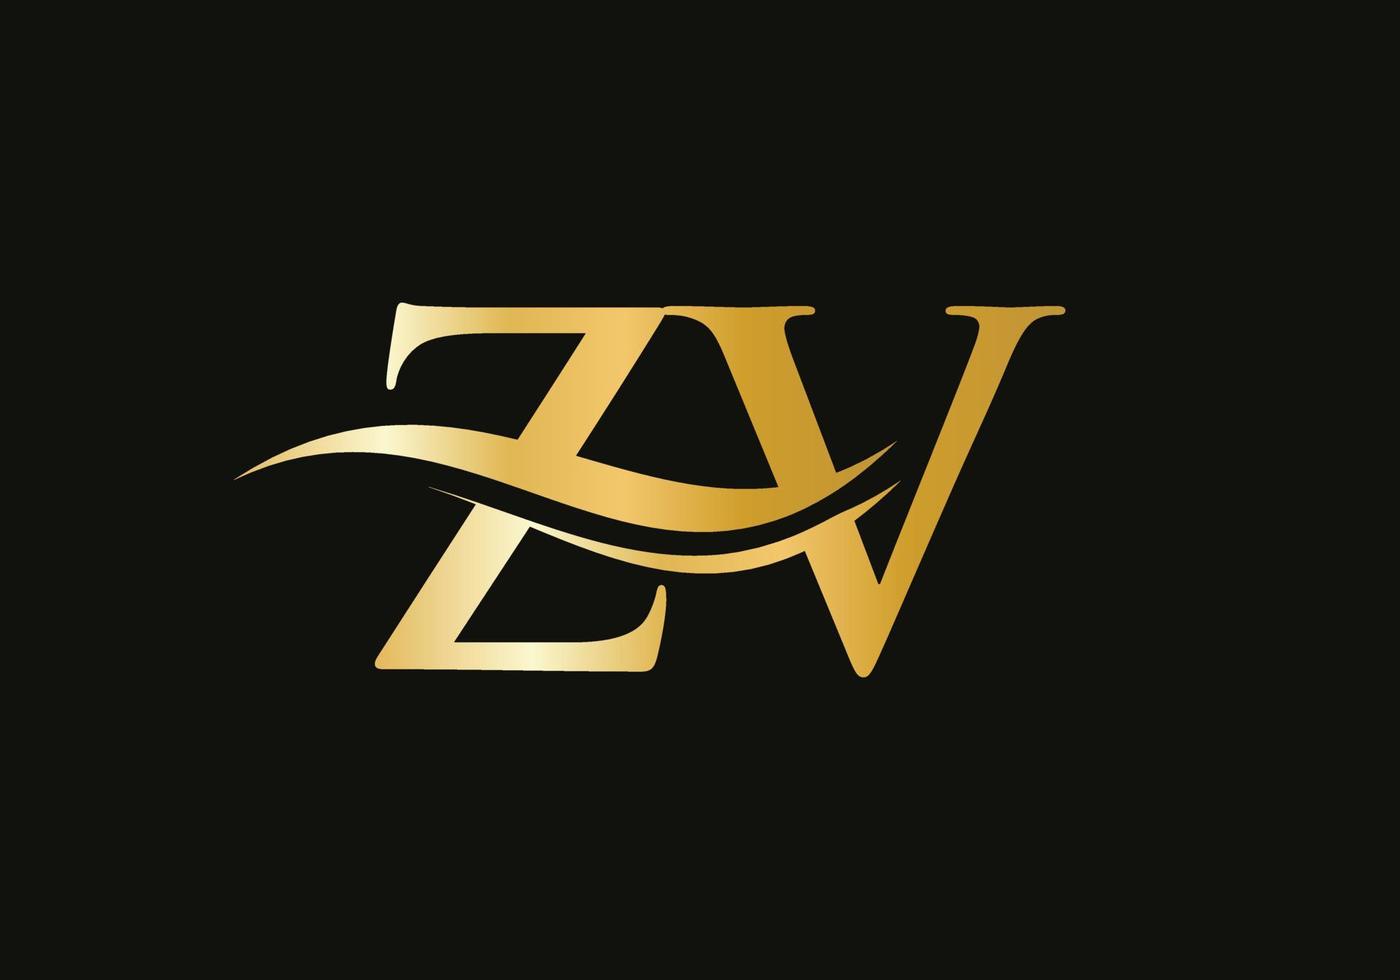 acqua onda zv logo vettore. swoosh lettera zv logo design per attività commerciale e azienda identità vettore